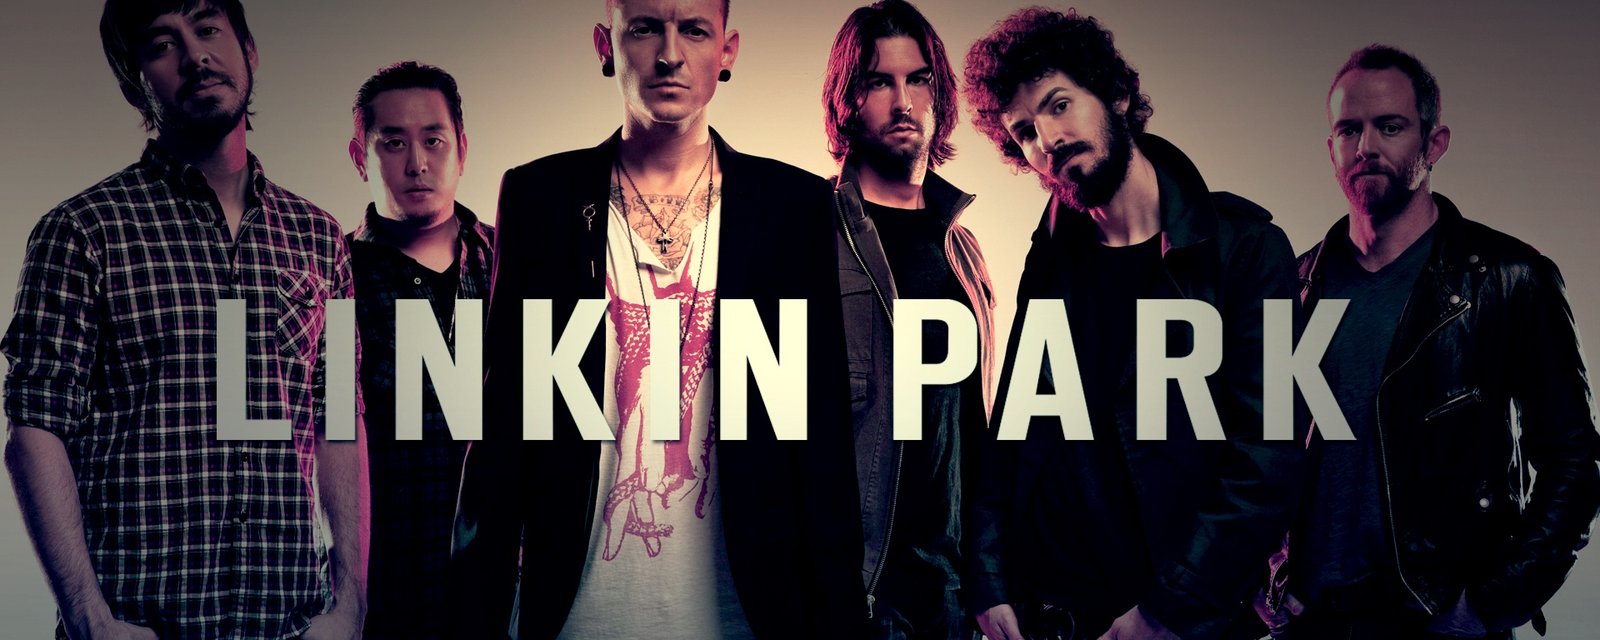 Terrible nouvelle: Le chanteur de Linkin Park s'enlève la vie!